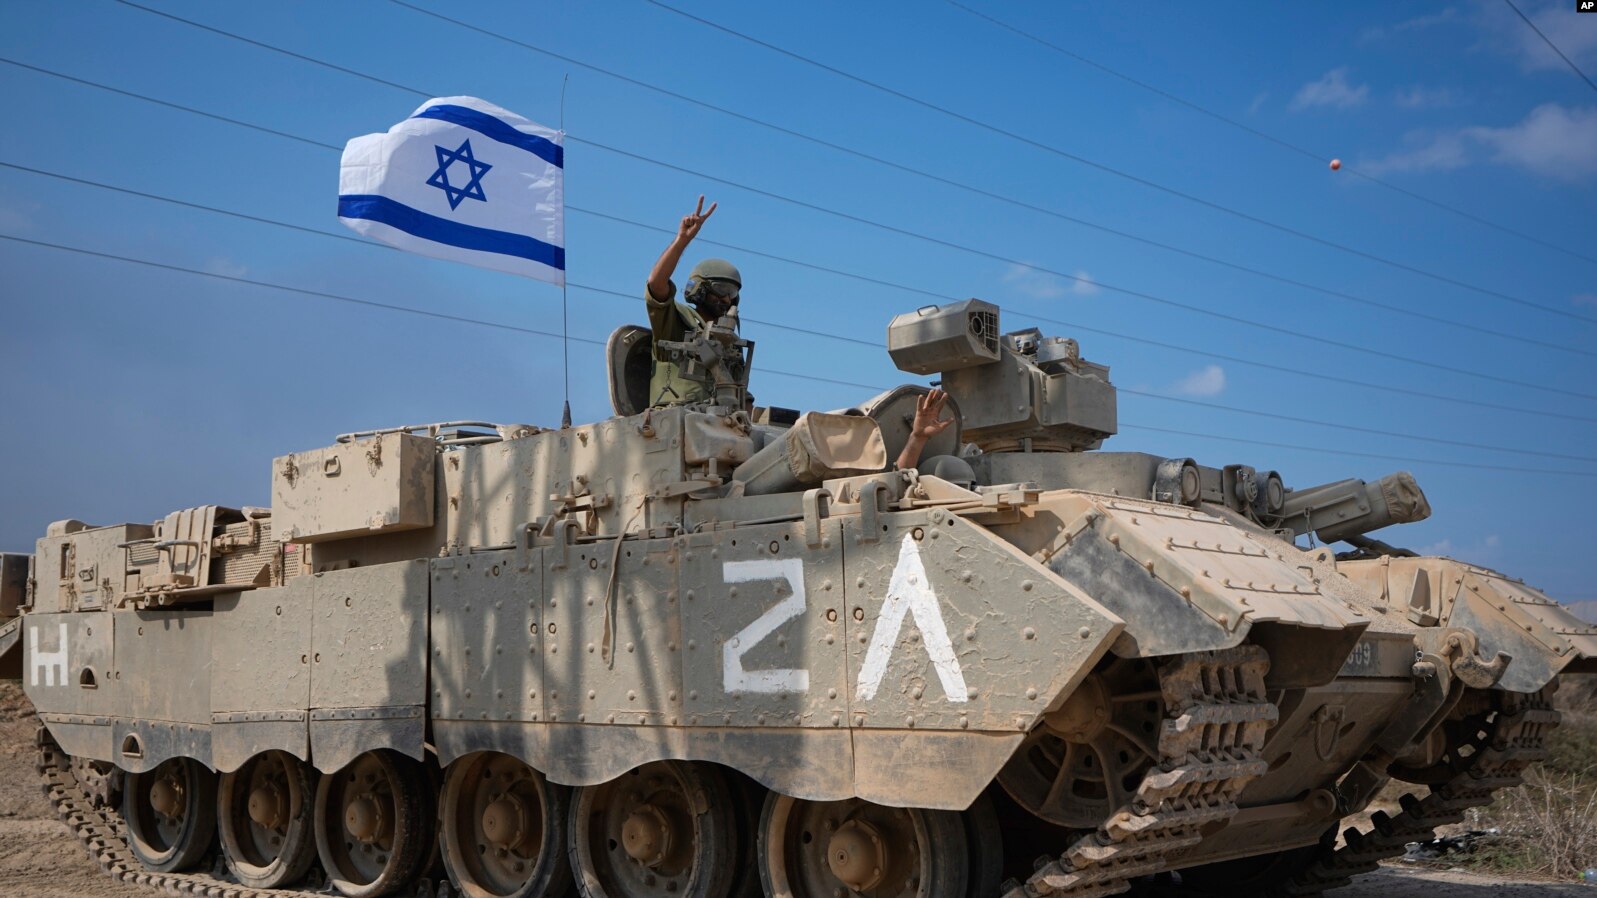 b5783fce-588b-4c06-8da9-fdc2a1a21520_w1597_n_r1_st.jpg - 🔴 بلاگ زنده| ارتش اسرائیل برای طیف گسترده‌ای از عملیات تهاجمی علیه حماس آماده می‌شود by mohsen dehbashi